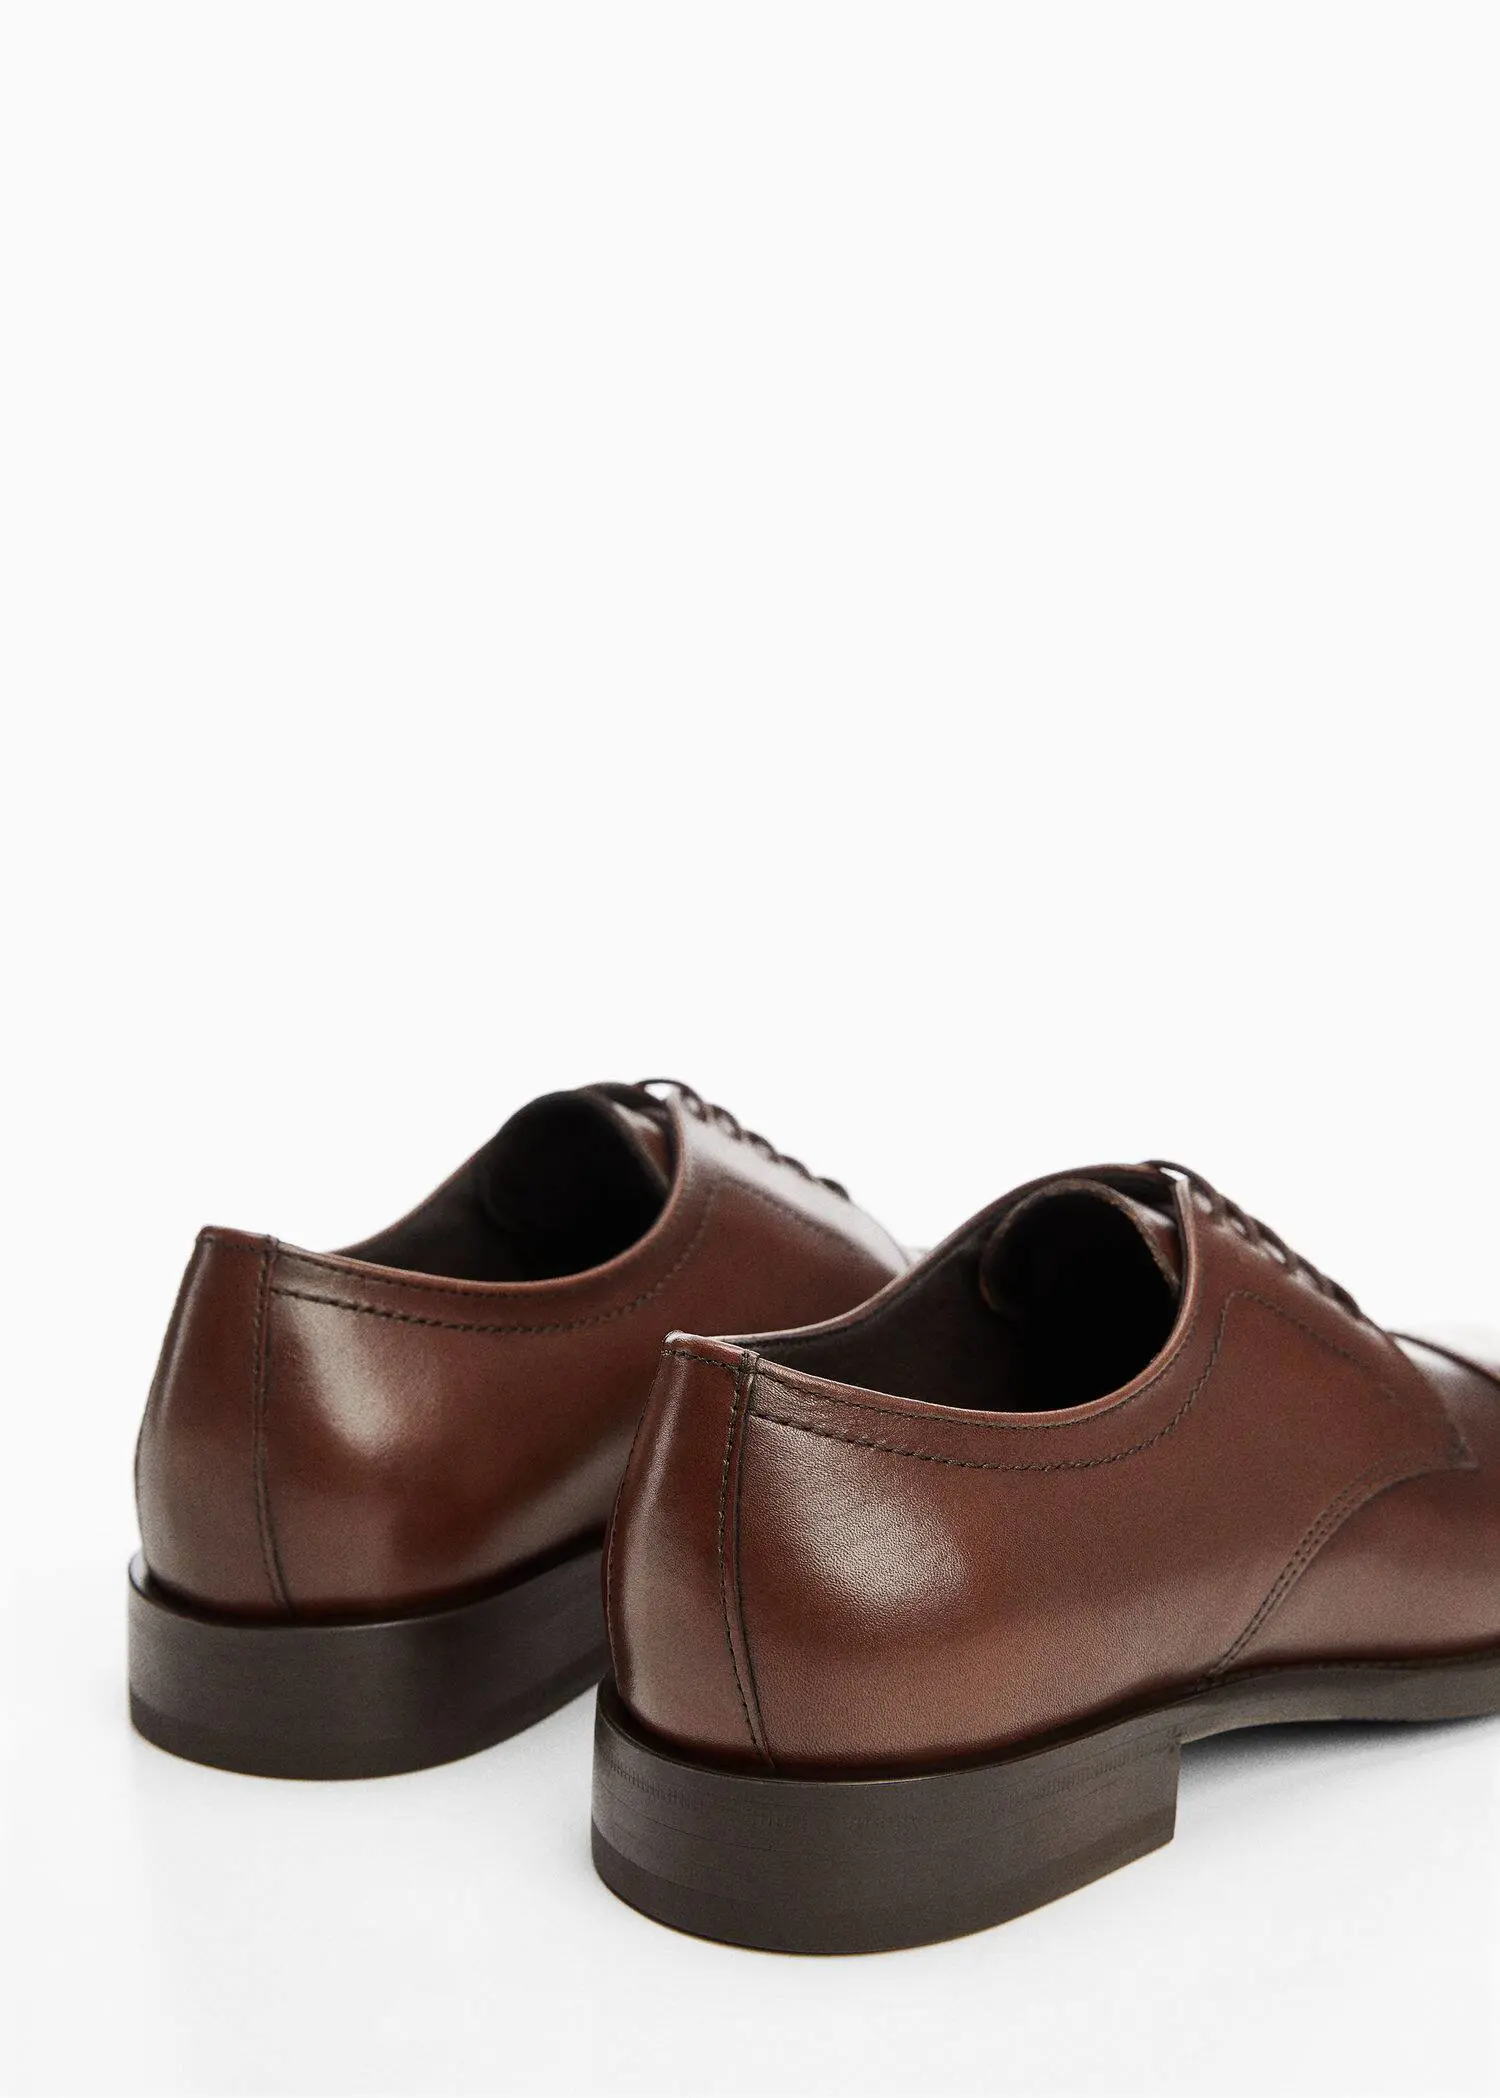 Mango Leather suit shoes. 2